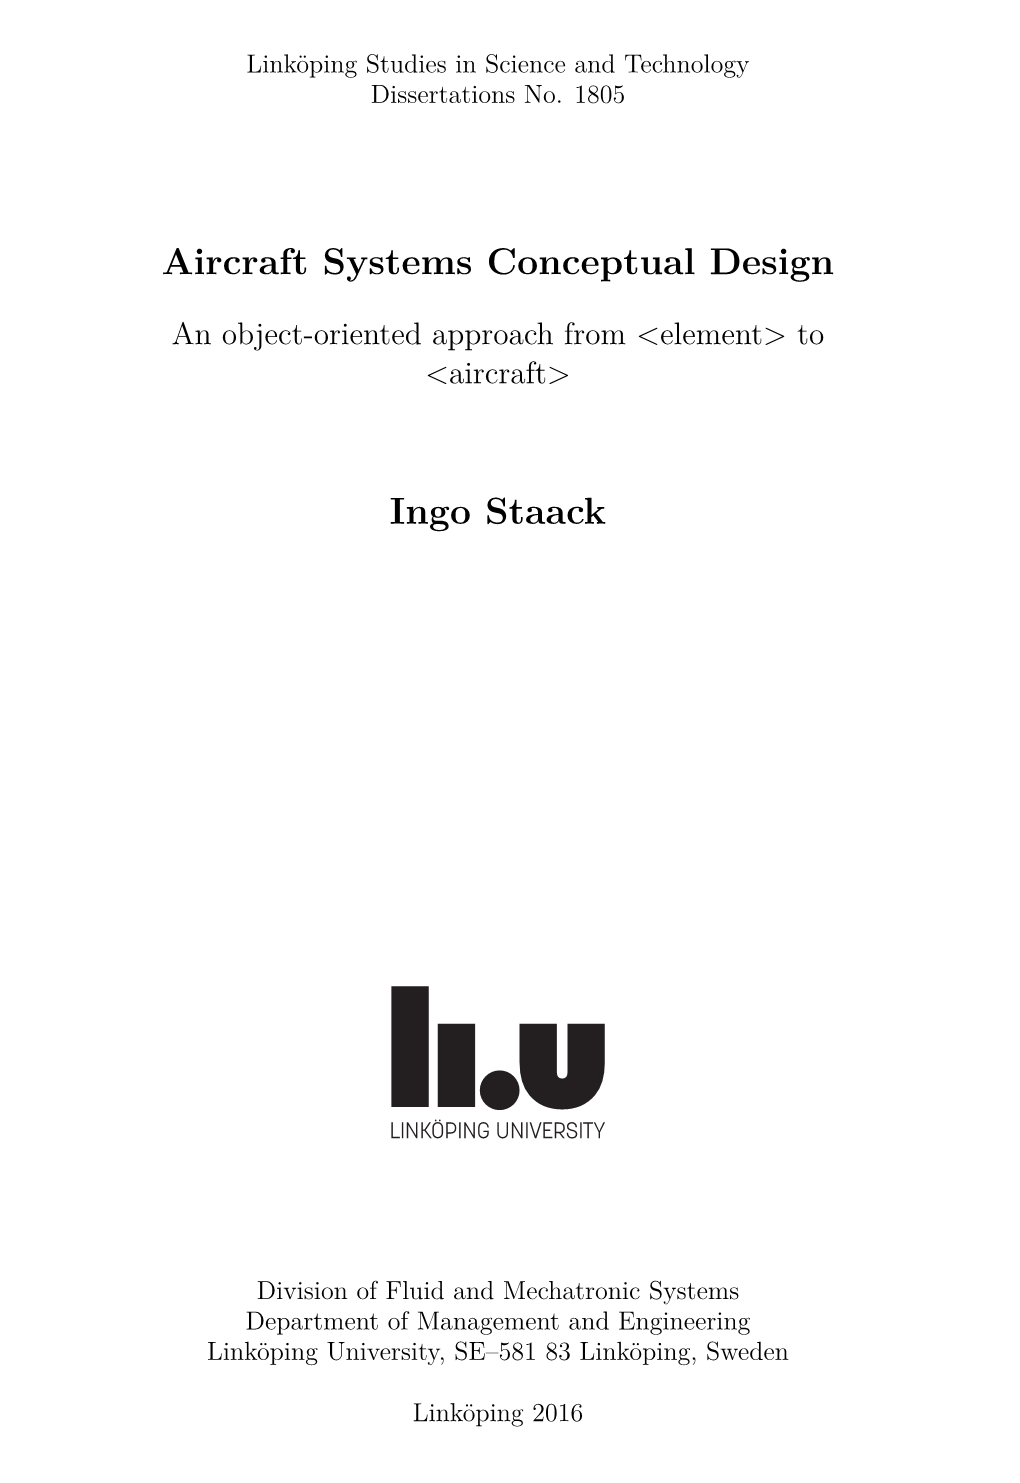 Aircraft Systems Conceptual Design